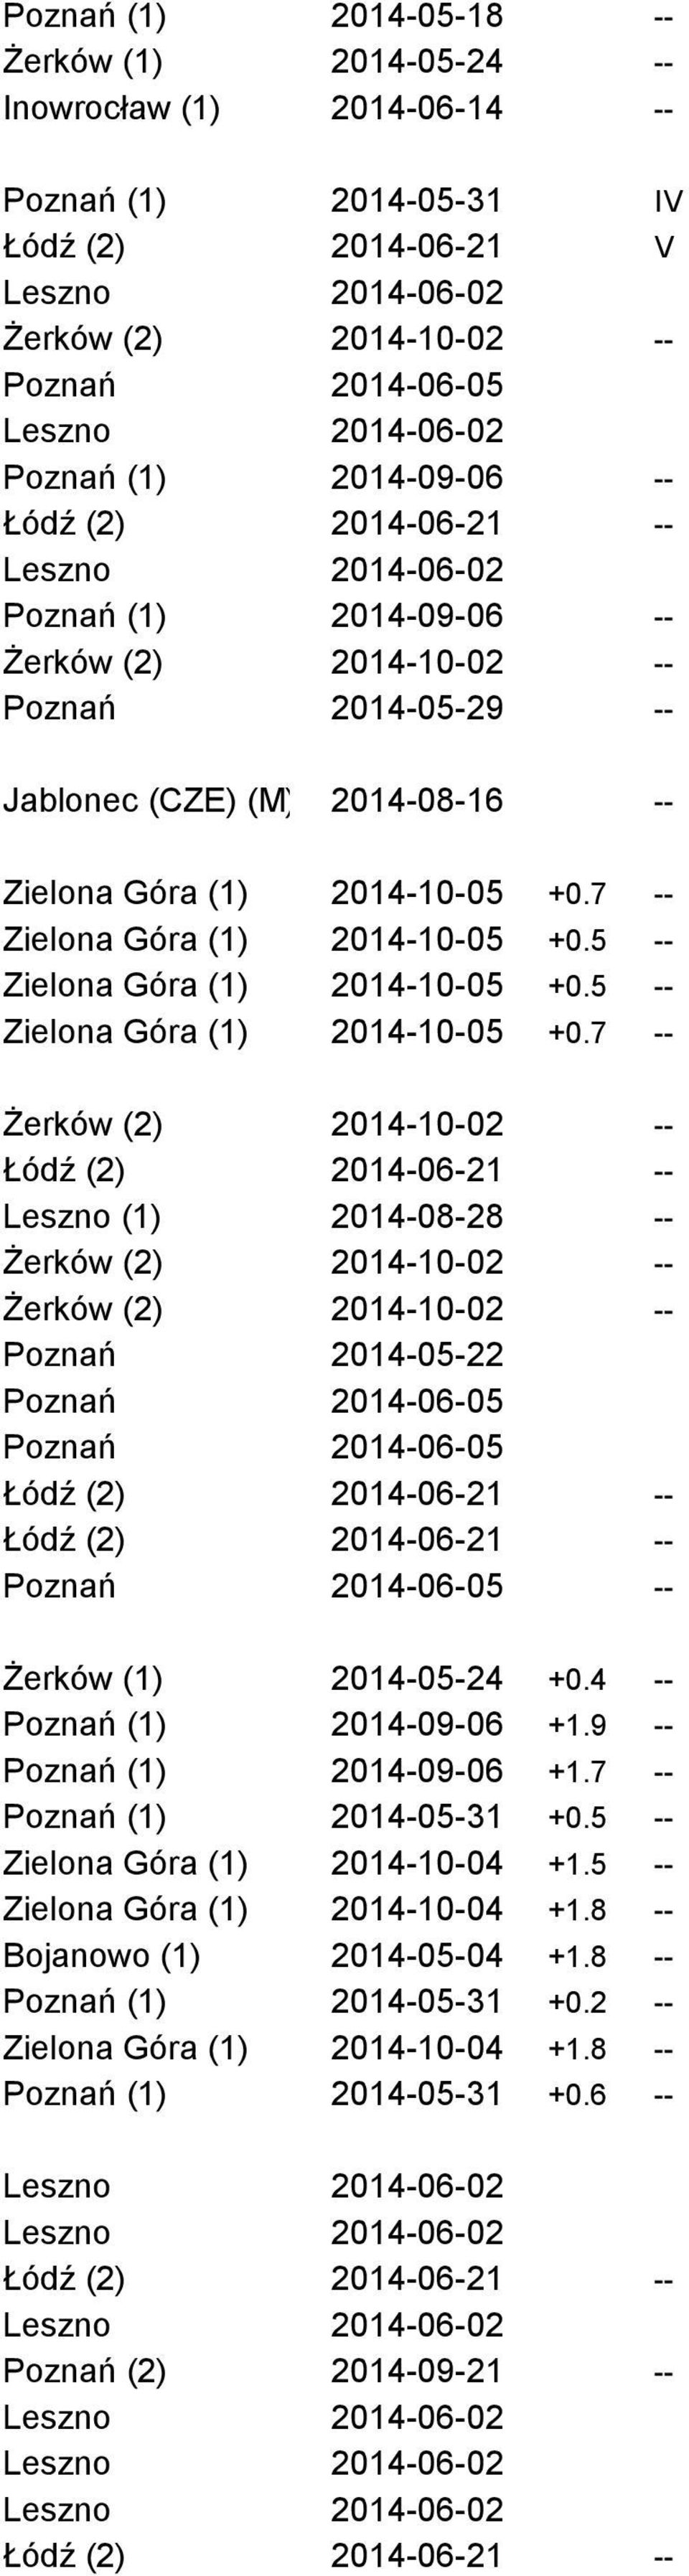 5 -- Zielona Góra (1) 2014-10-05 +0.7 -- Leszno (1) 2014-08-28 -- Poznań 2014-05-22 -- Żerków (1) 2014-05-24 +0.4 -- Poznań (1) 2014-09-06 +1.9 -- Poznań (1) 2014-09-06 +1.